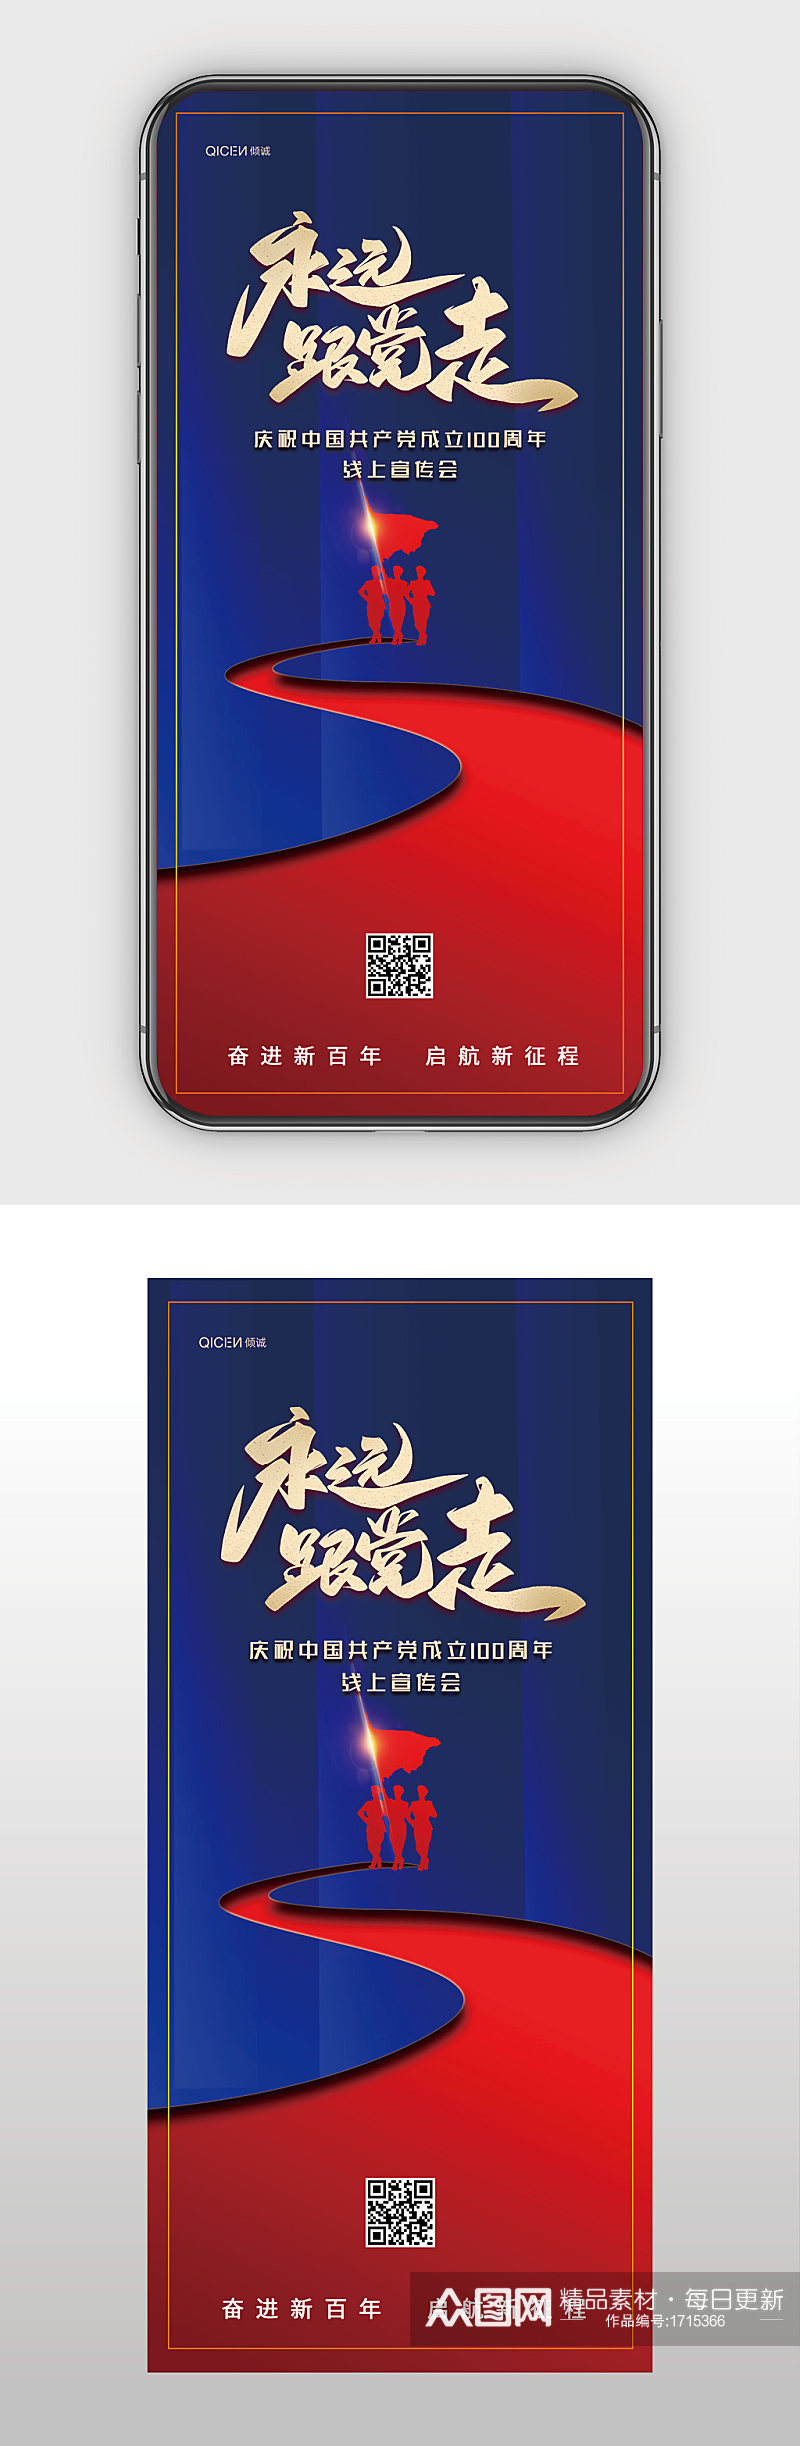 蓝色大气中国建党100周年手机海报配图素材